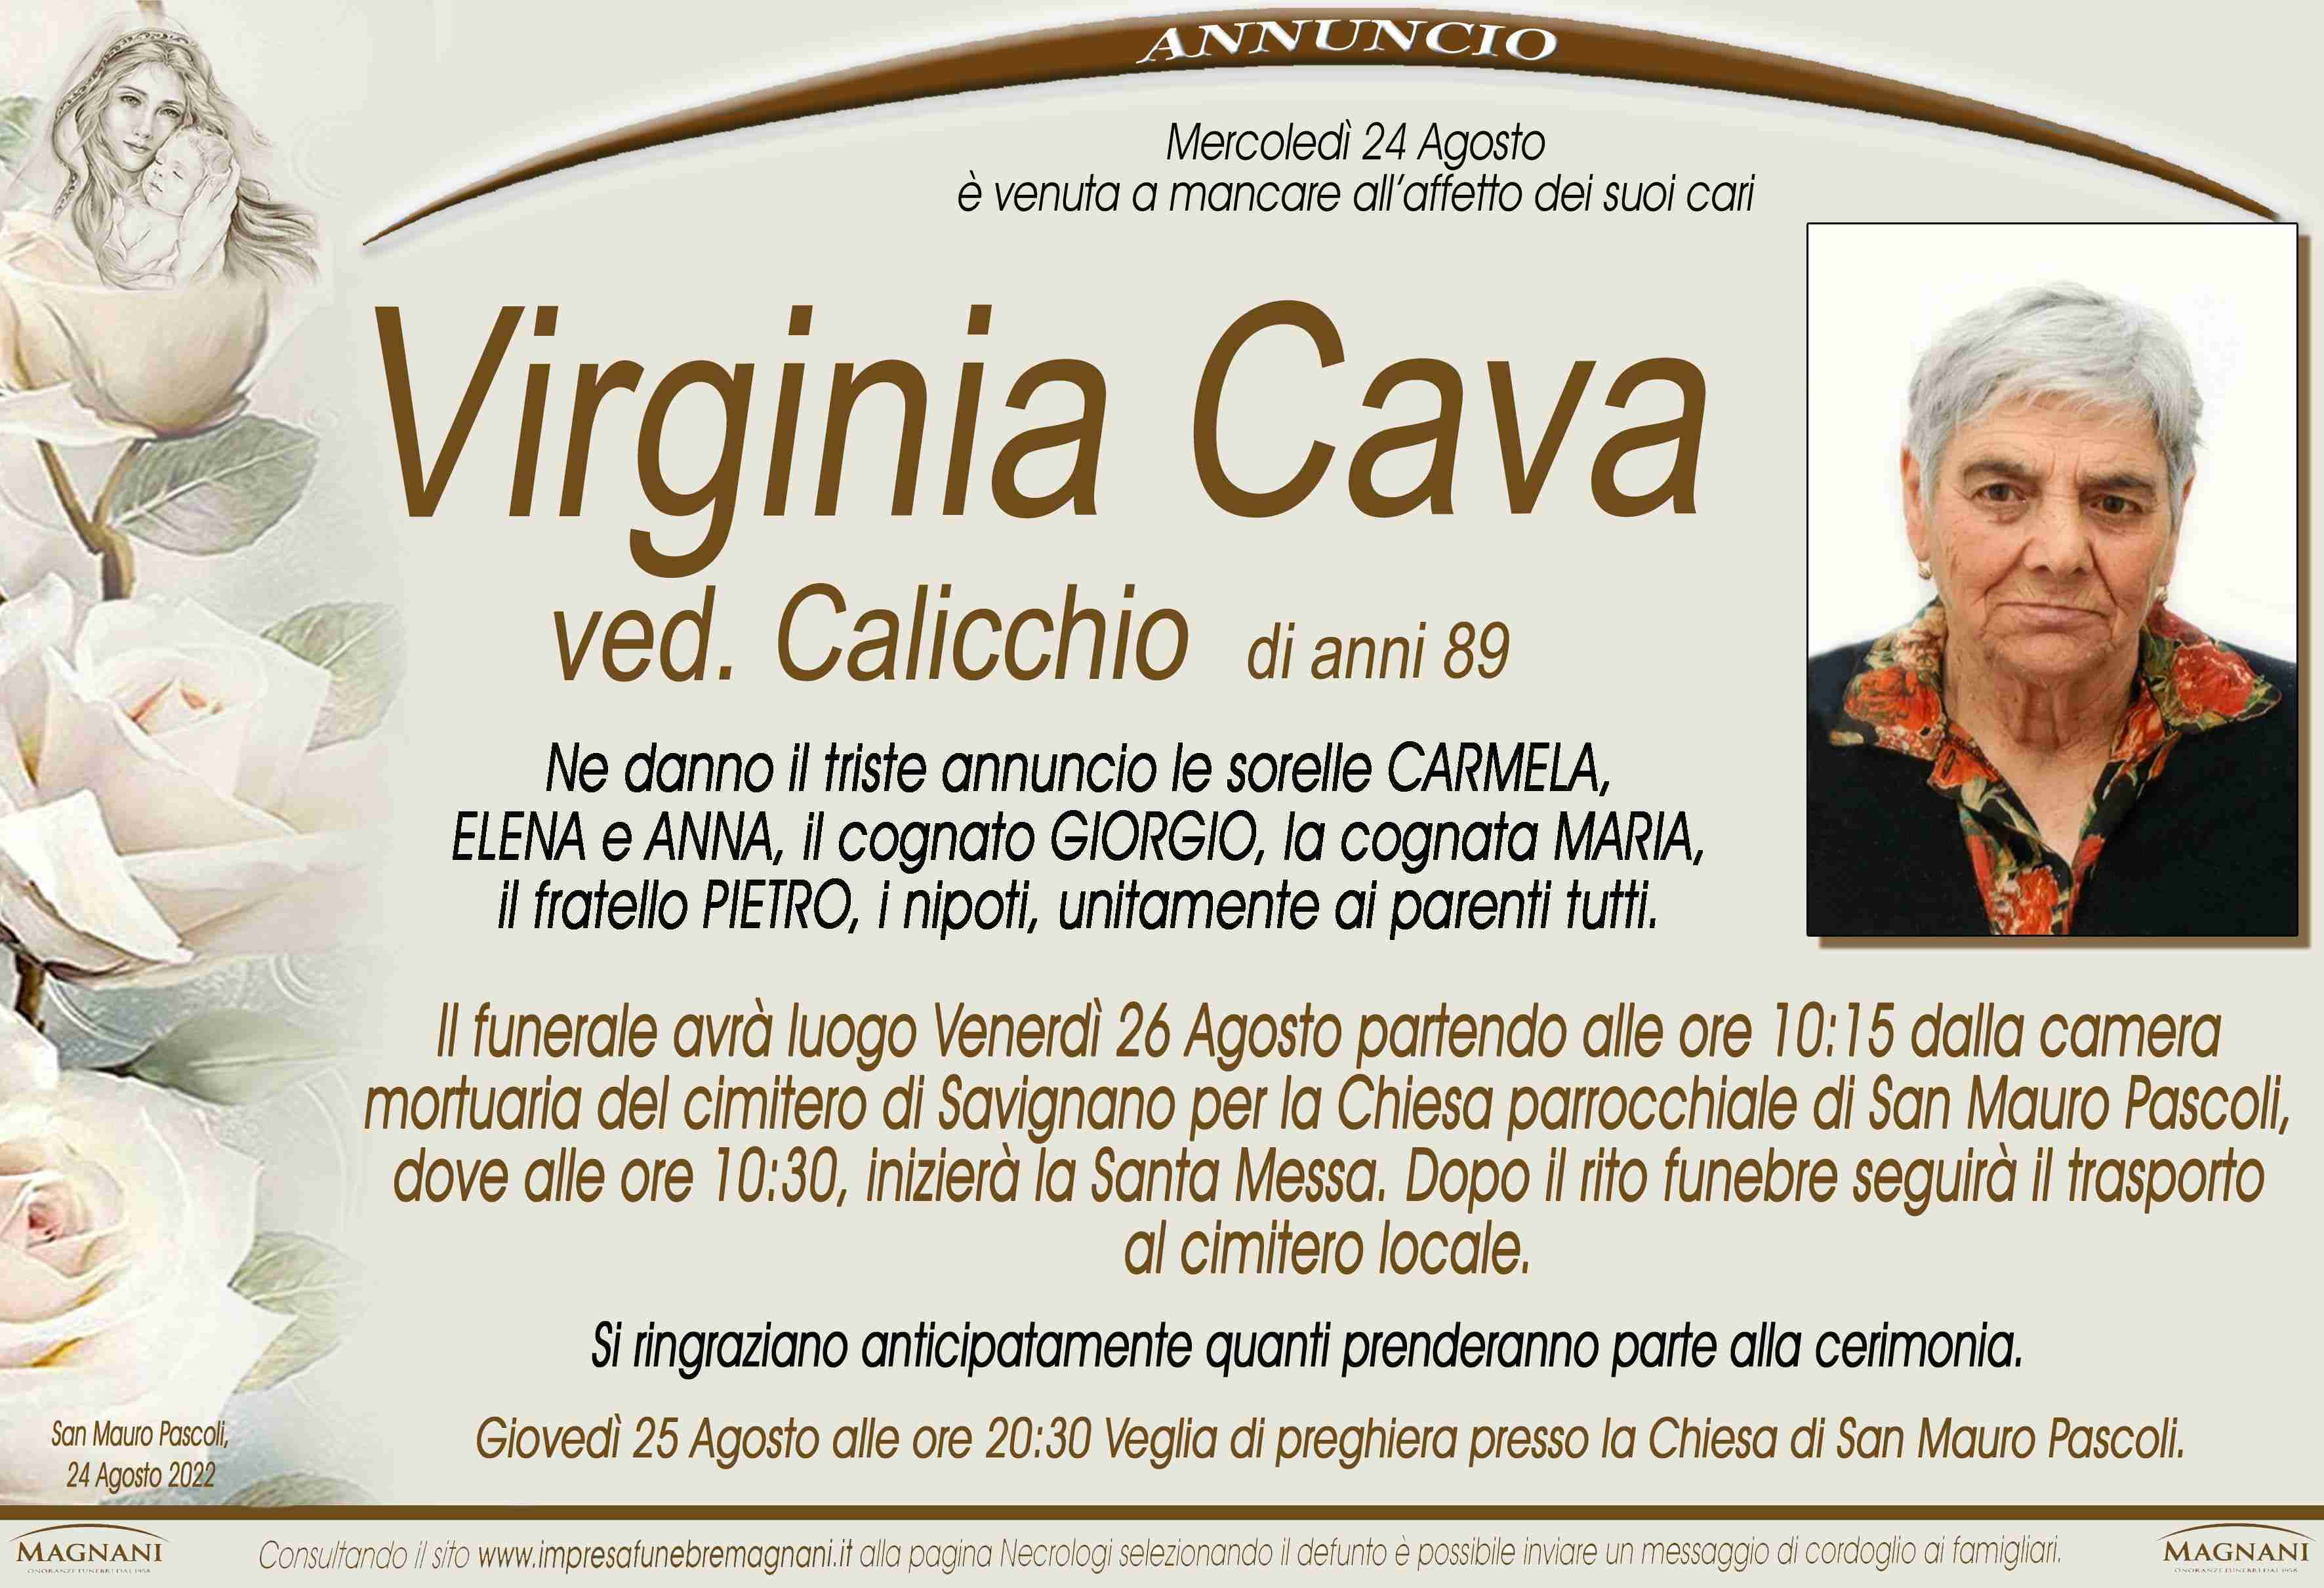 Virginia Cava